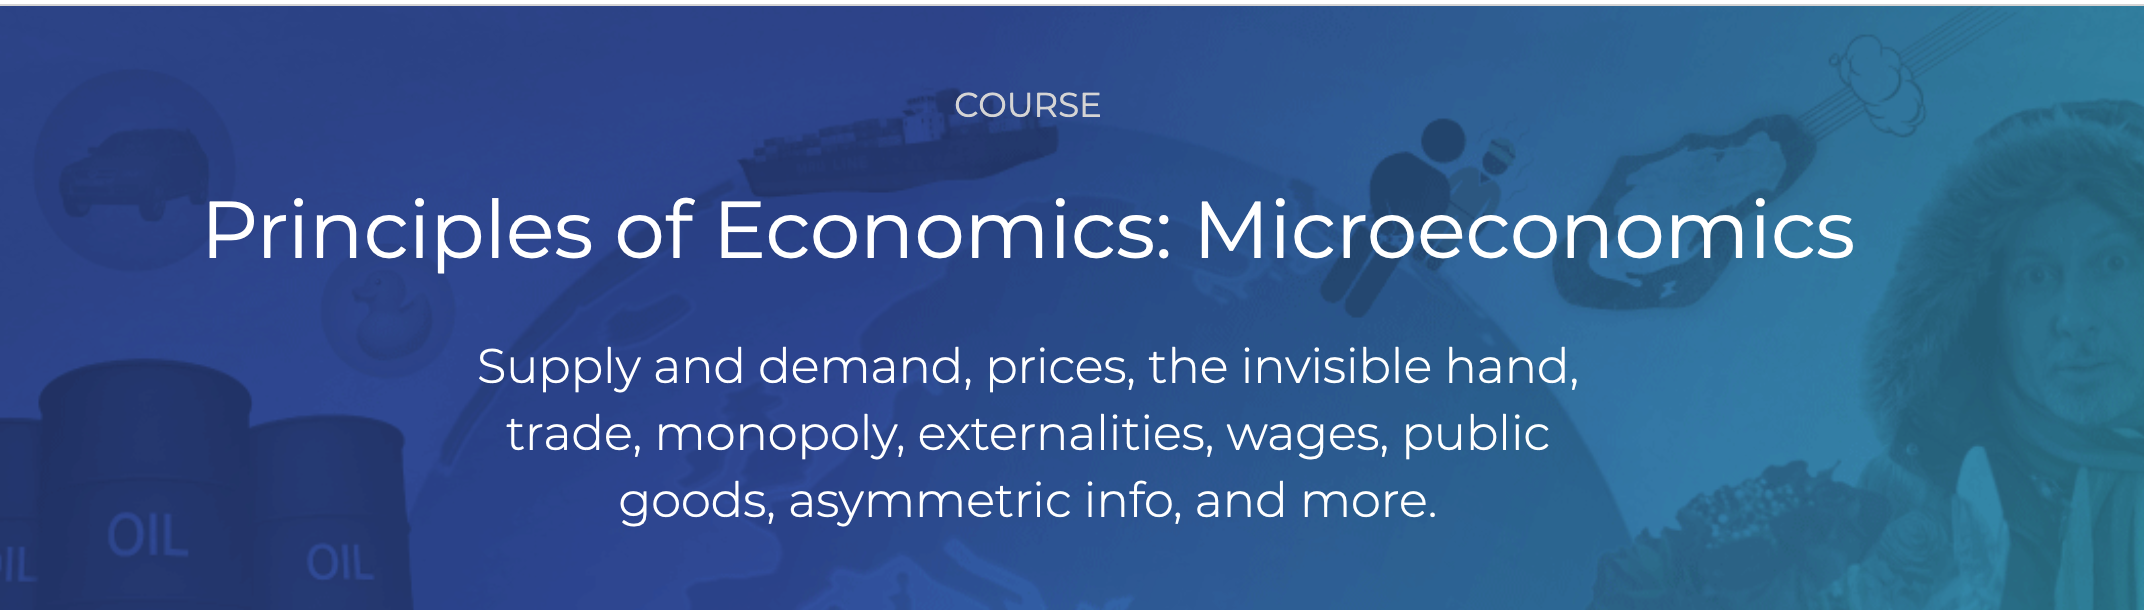 Principles of Economics - Microeconomics